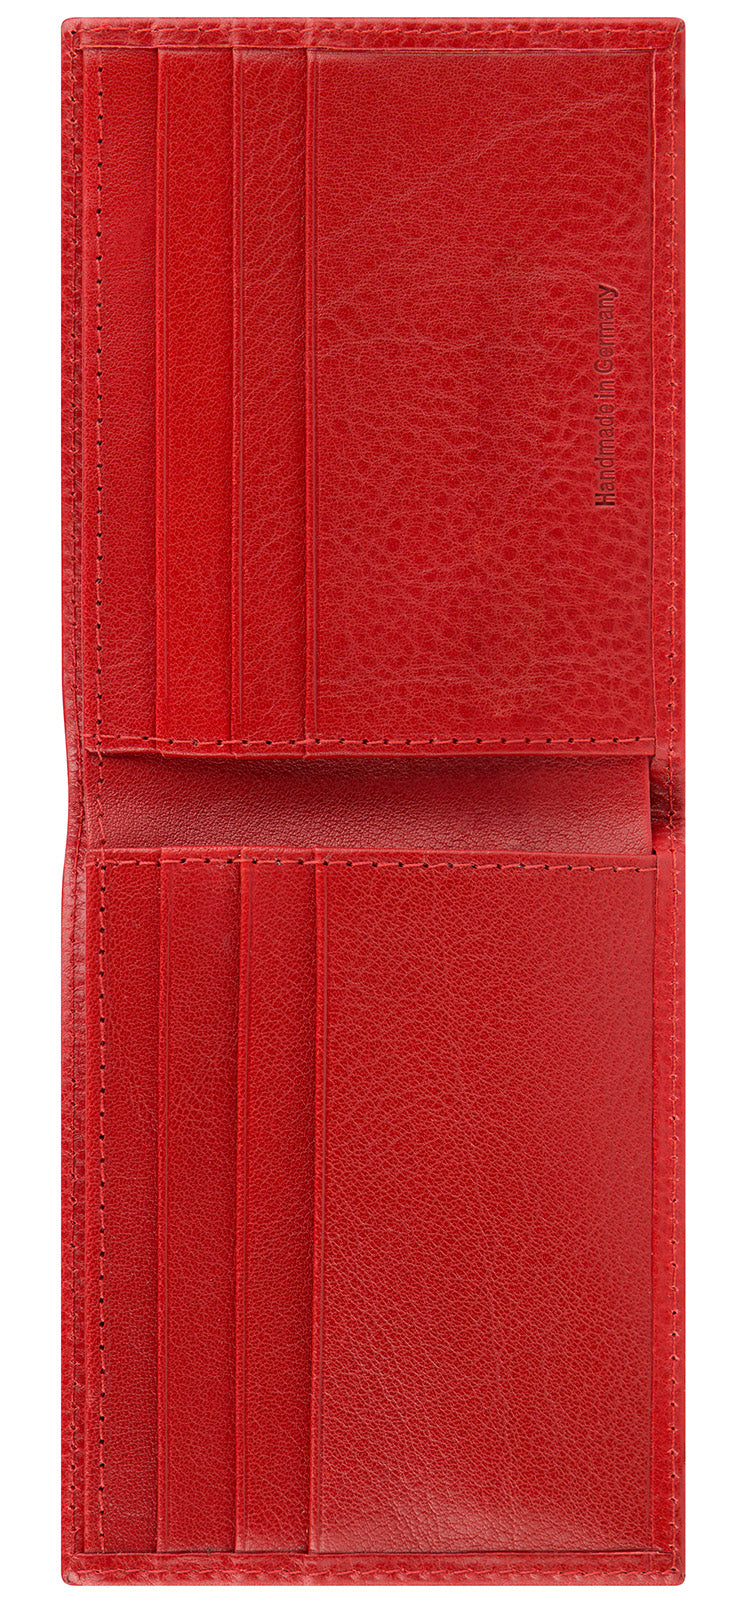 Rotes kleines Portemonnaie für Herren und Damen